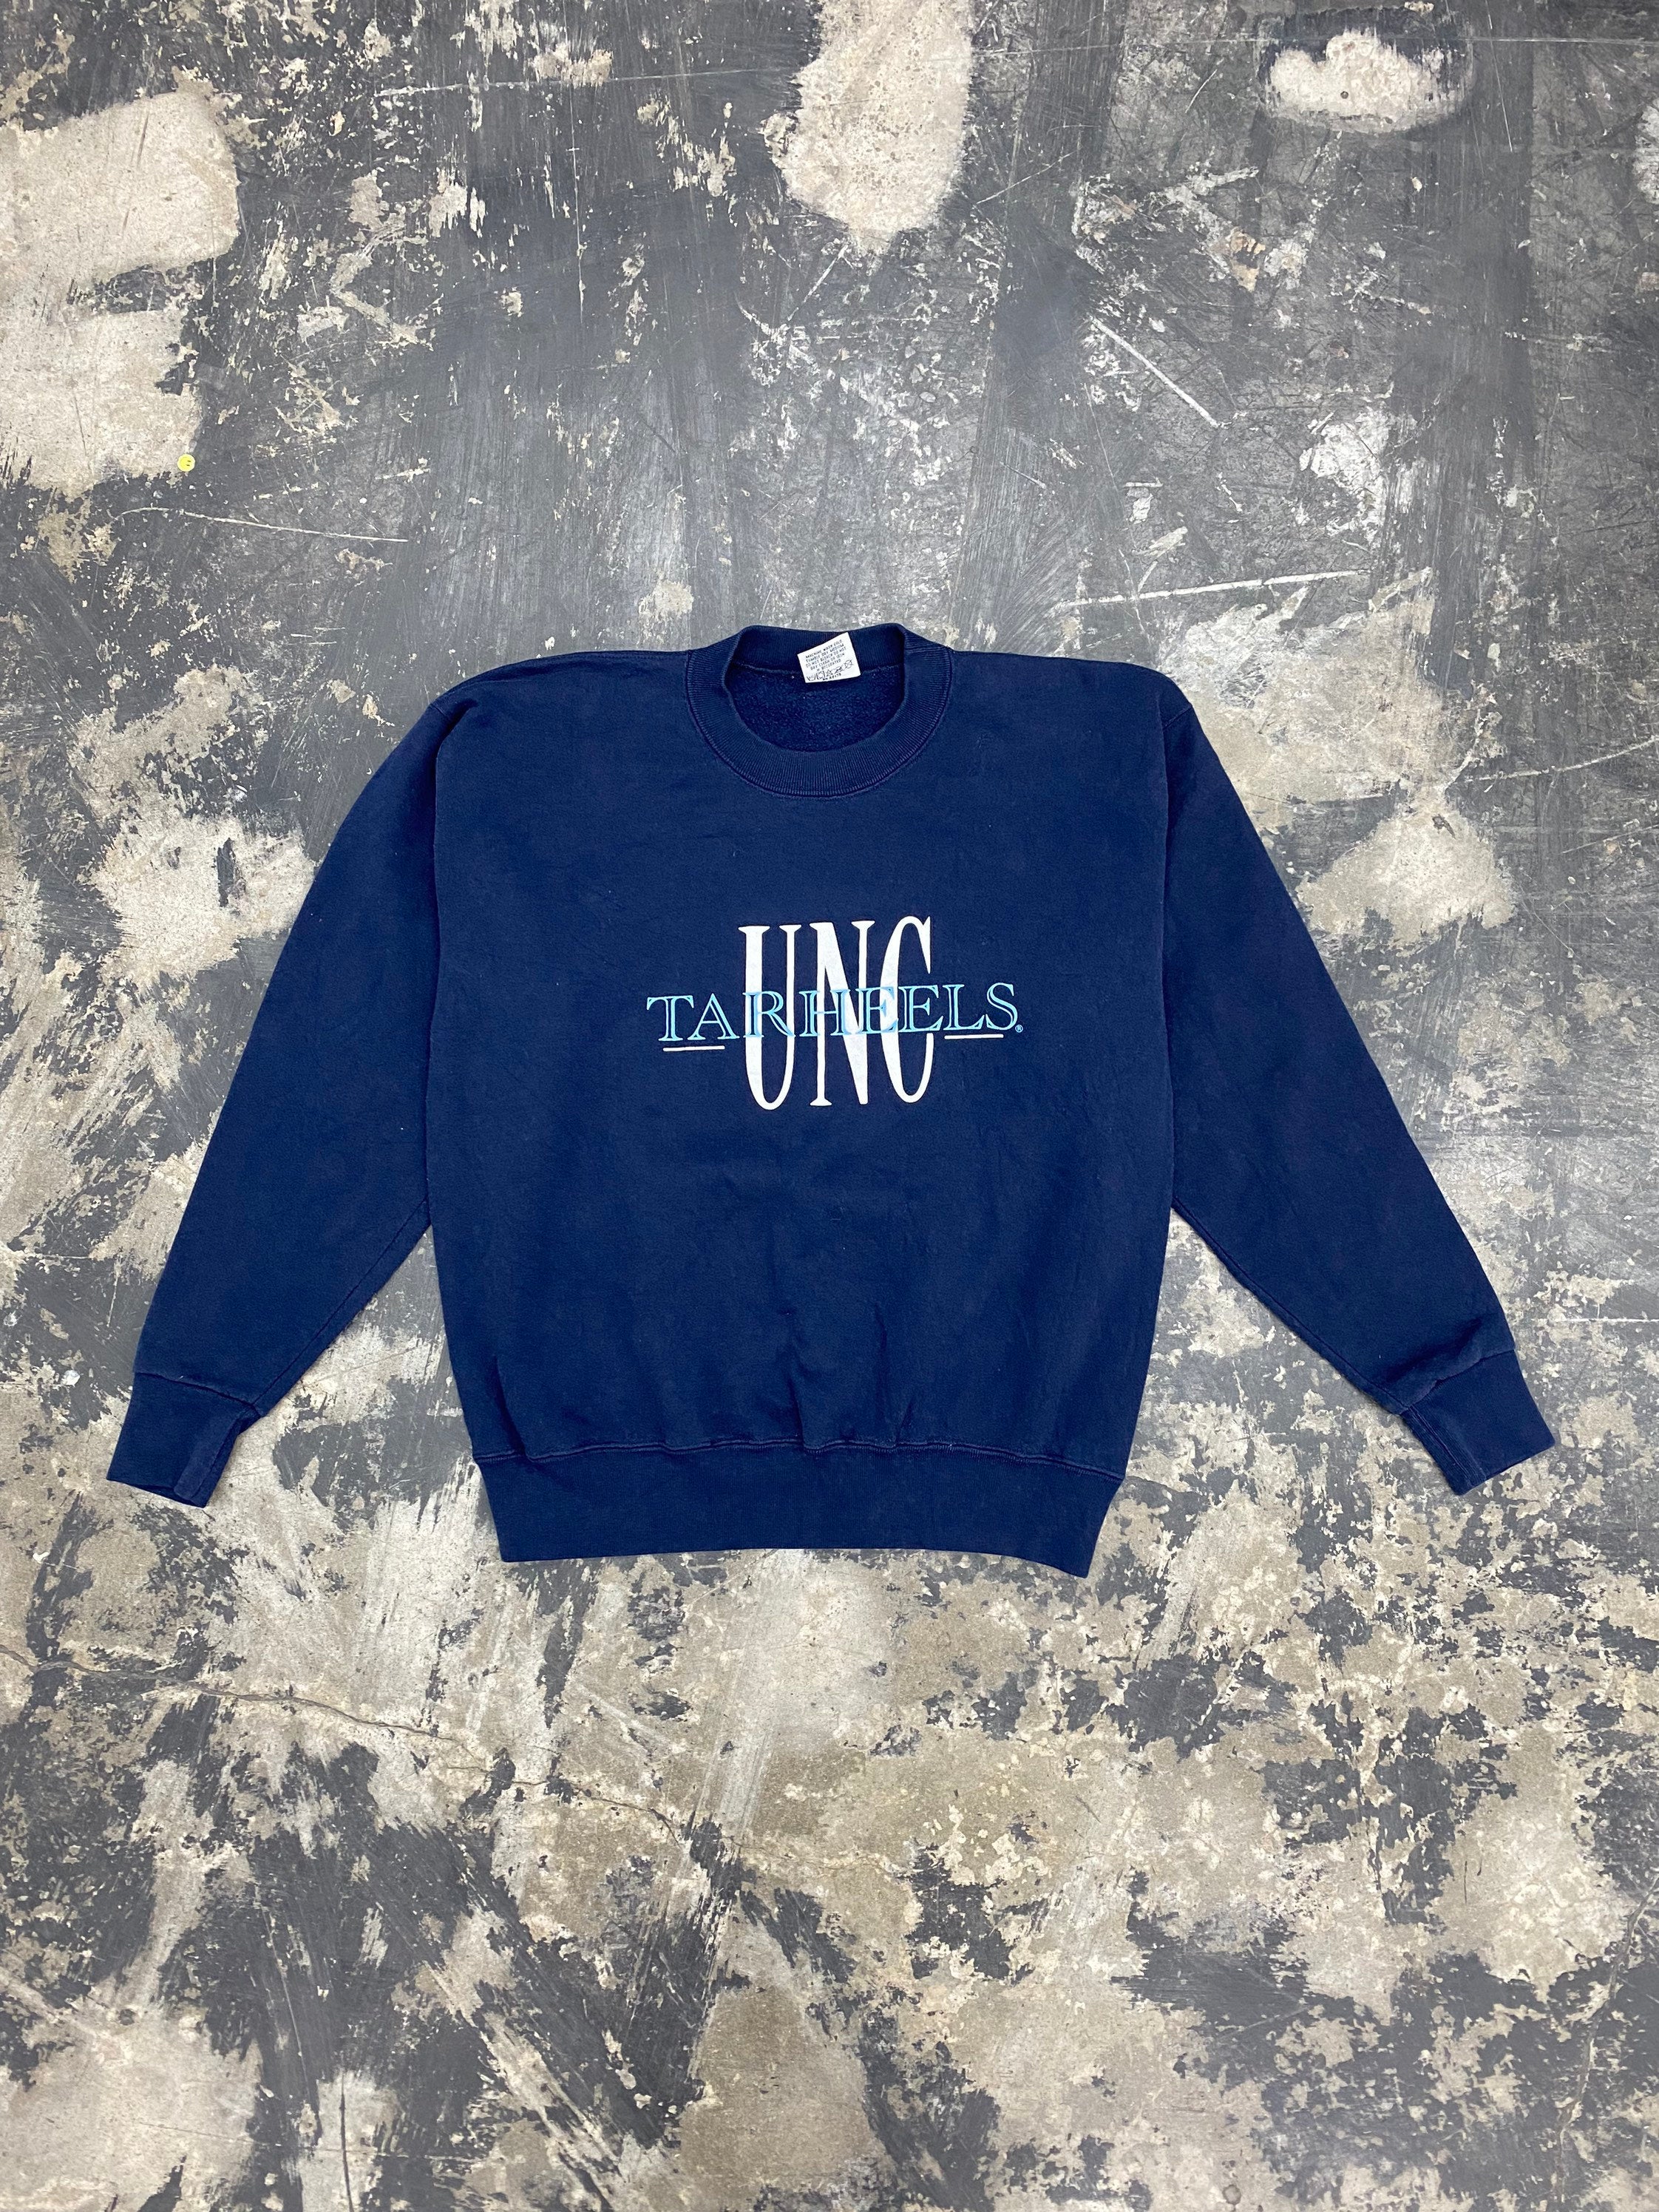 90s UNC Tar Heels Sweatshirt Vintage UNC Sweatshirt